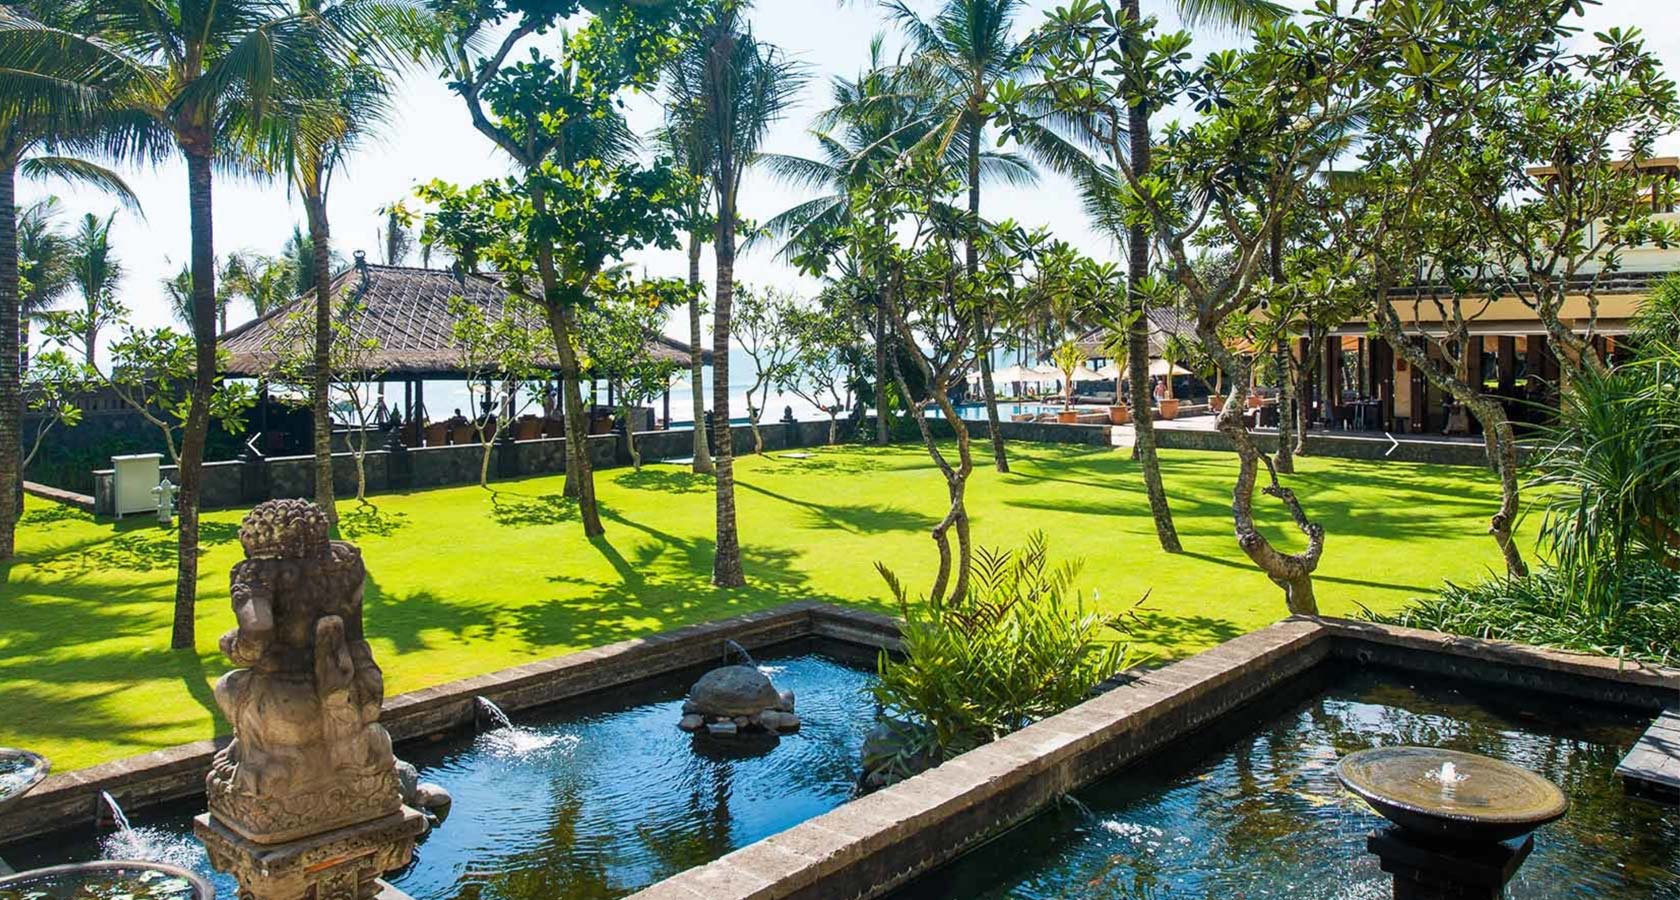 BALI HONEYMOON PACKAGES Cheap Bali Honeymoon Package 2019